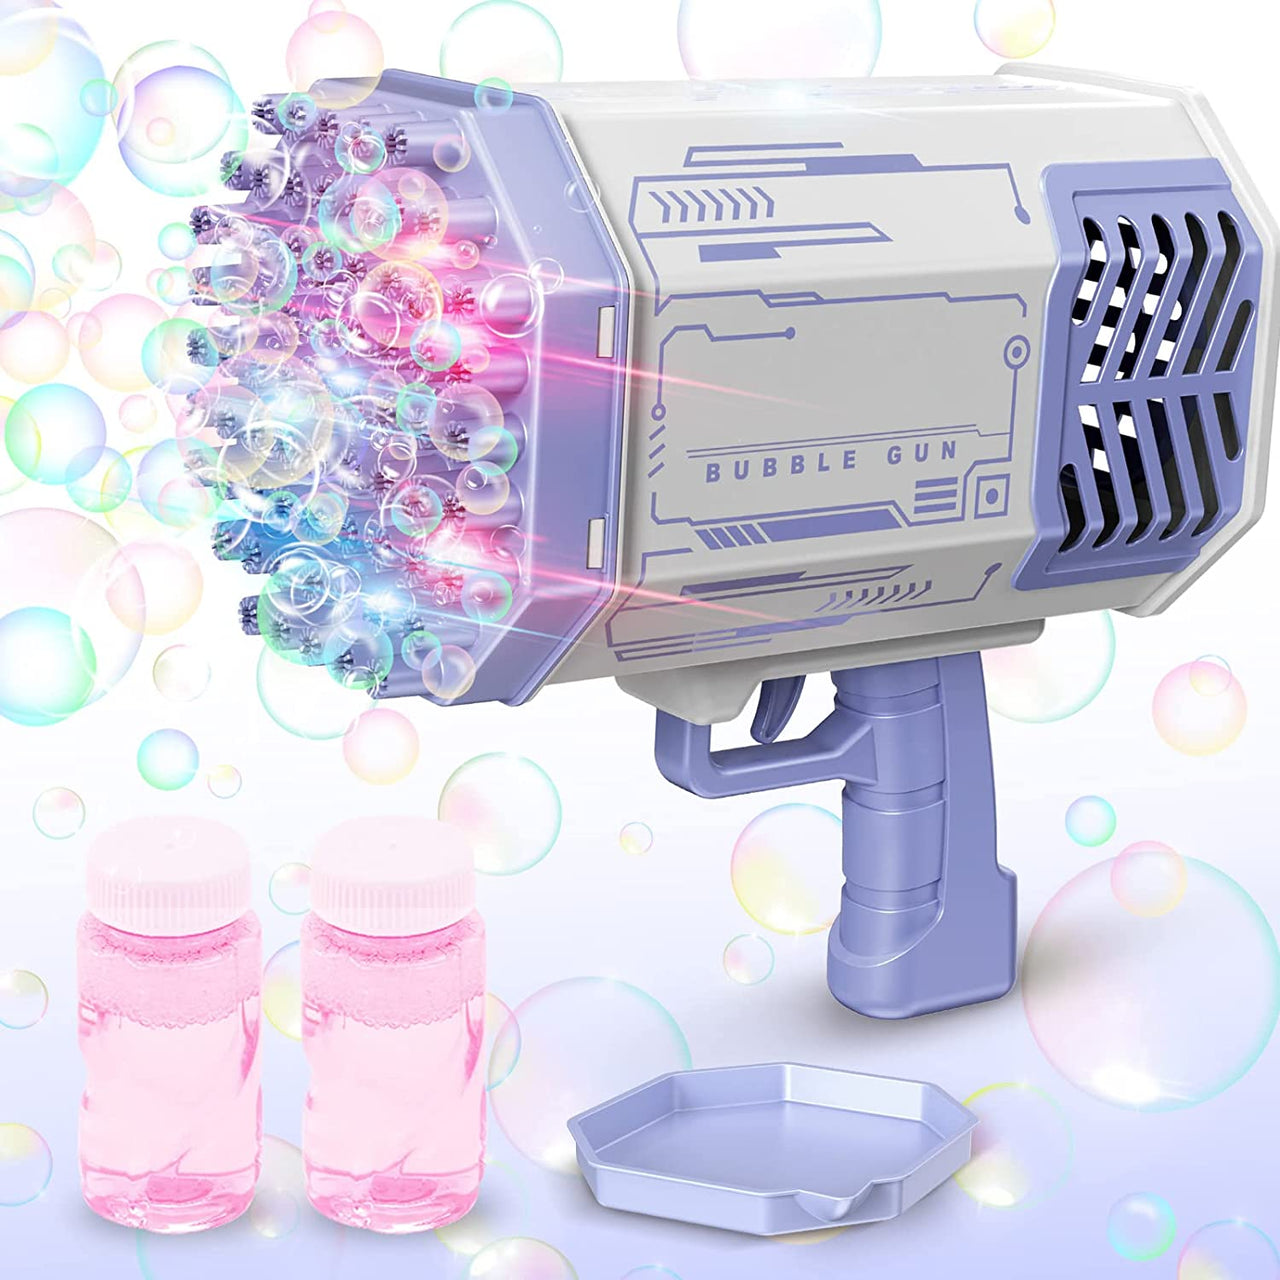 Bubbles Gun - LightsBetter